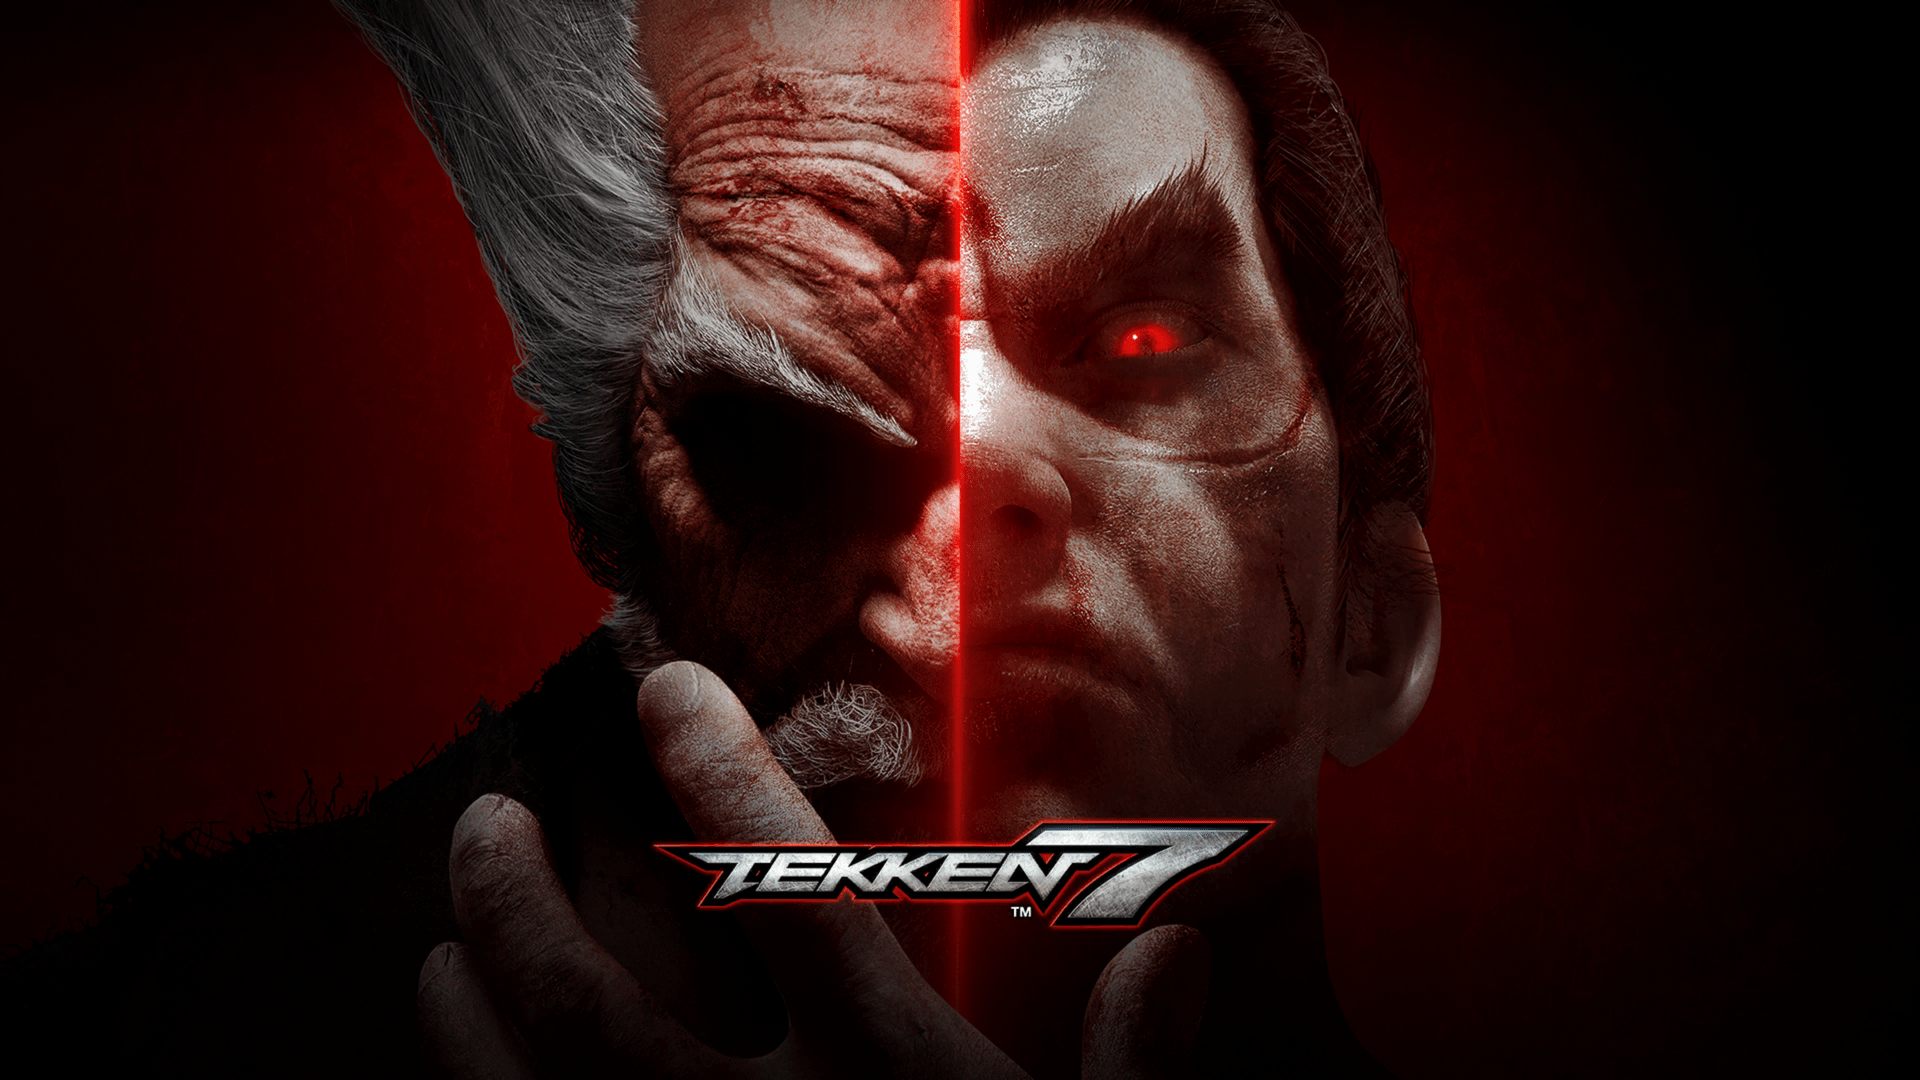 Tekken 7 Wallpapers - Top Free Tekken 7 Backgrounds ...